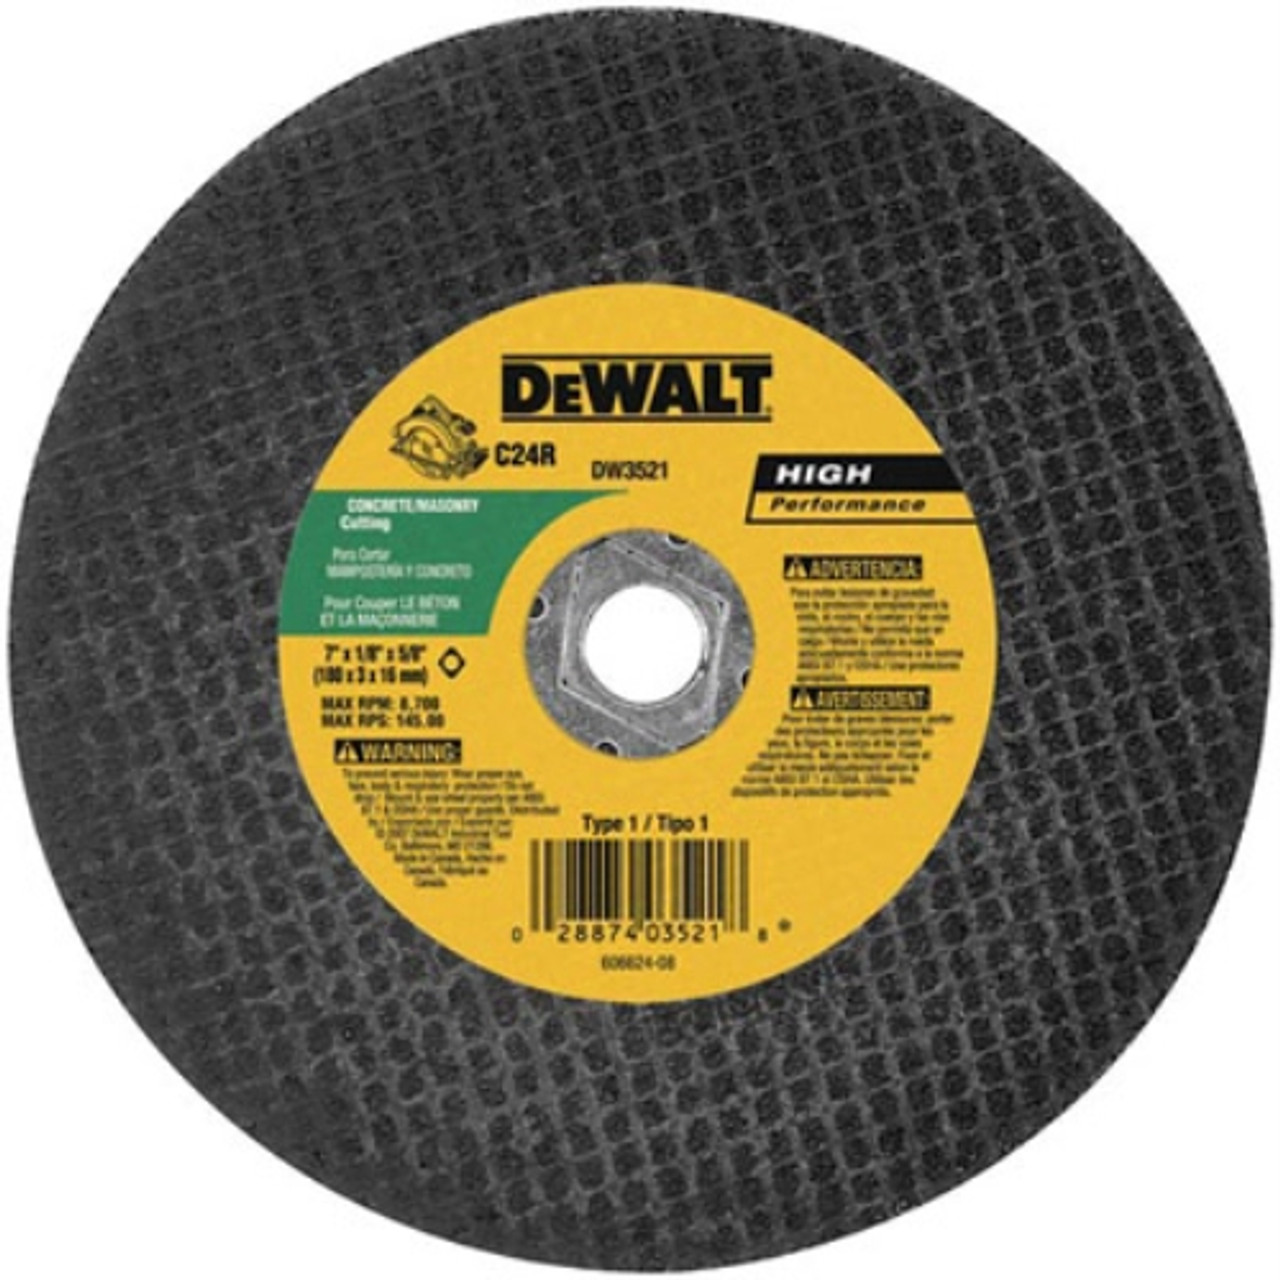 Dewalt DW3521 7"" x 1/8"" Masonry Abrasive Blade